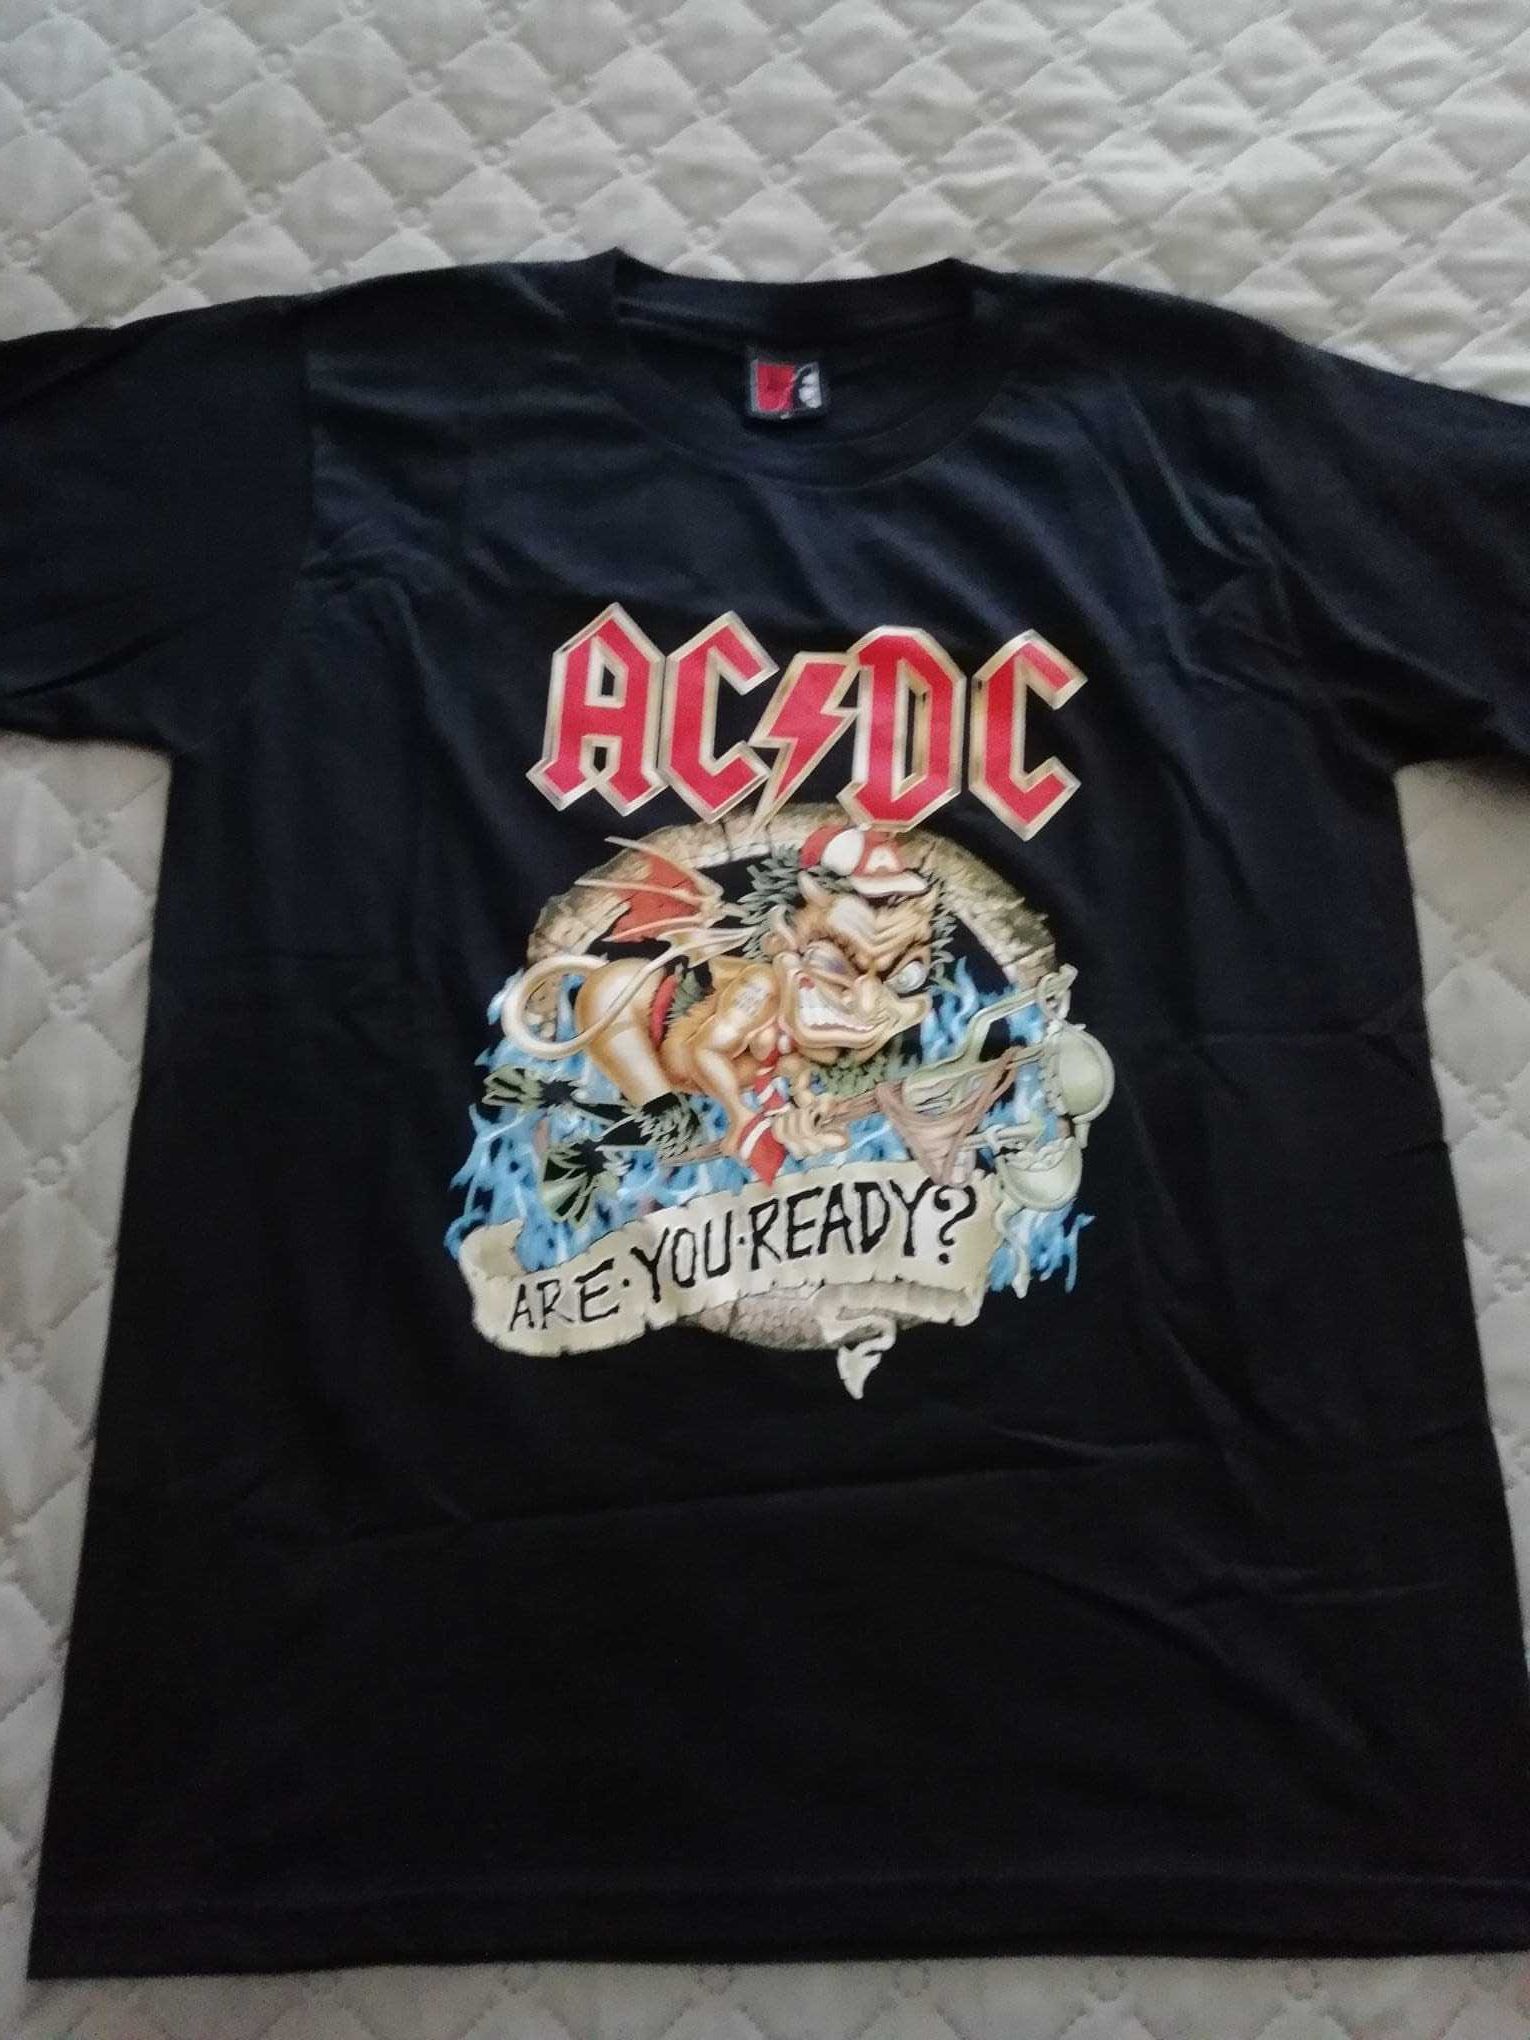 T-shirts variadas de bandas de rock